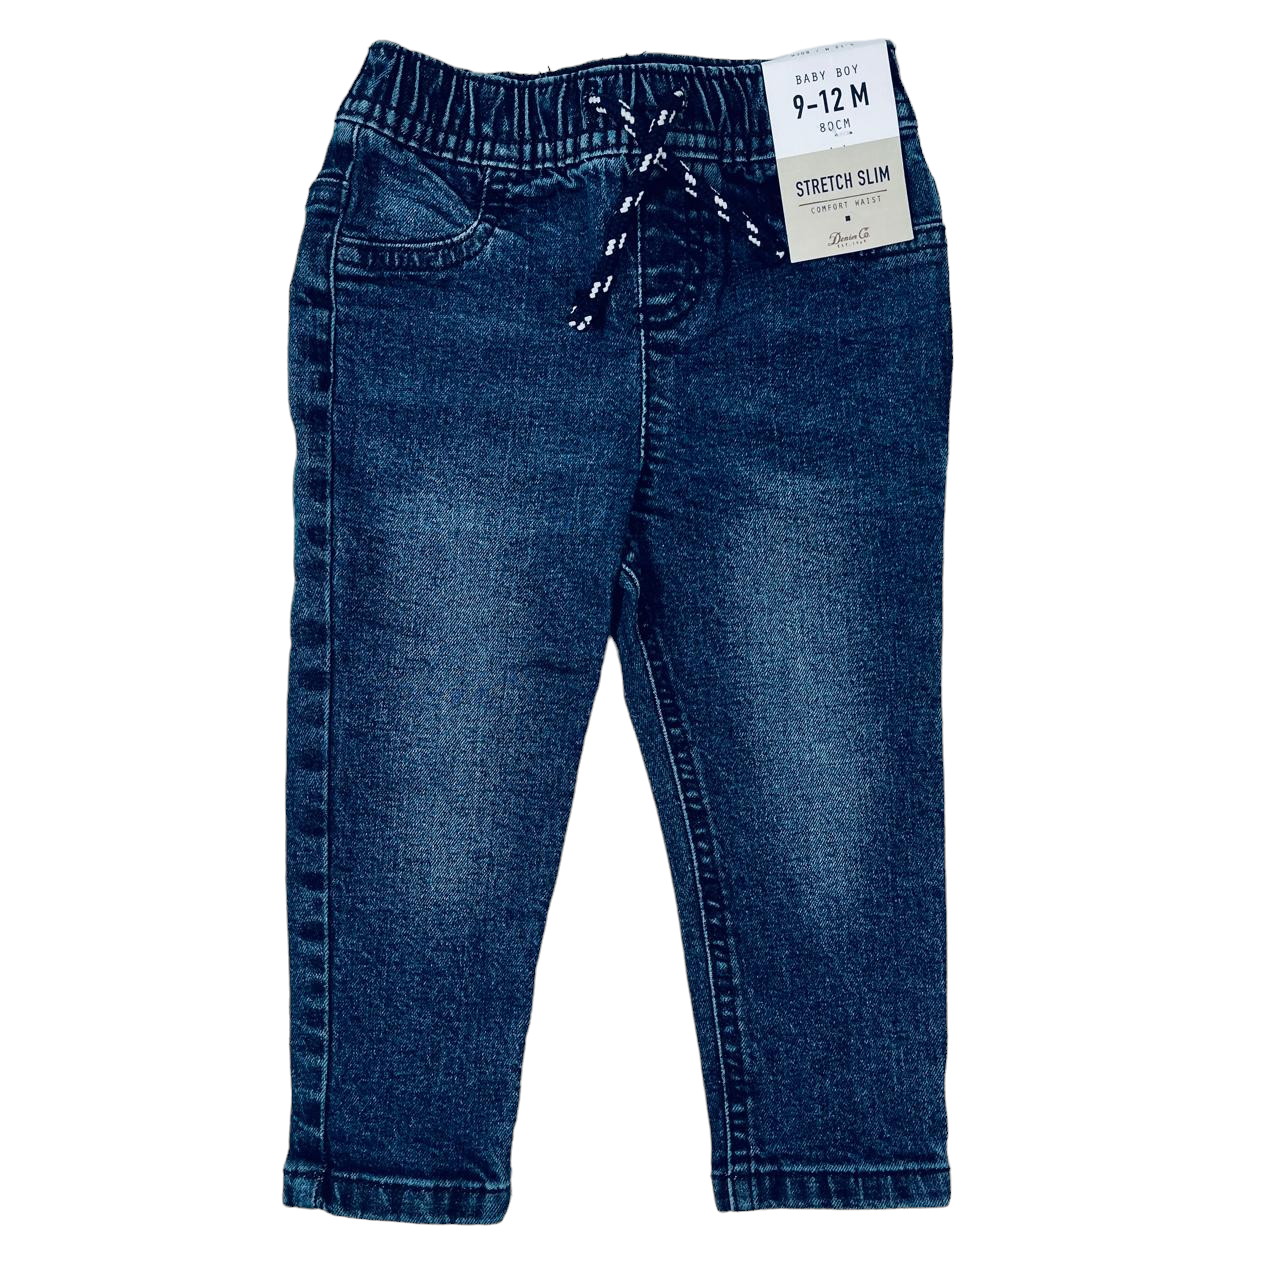 Jeans mezclilla con pretina ajustable cordones azul con blanco nuevo con etiqueta